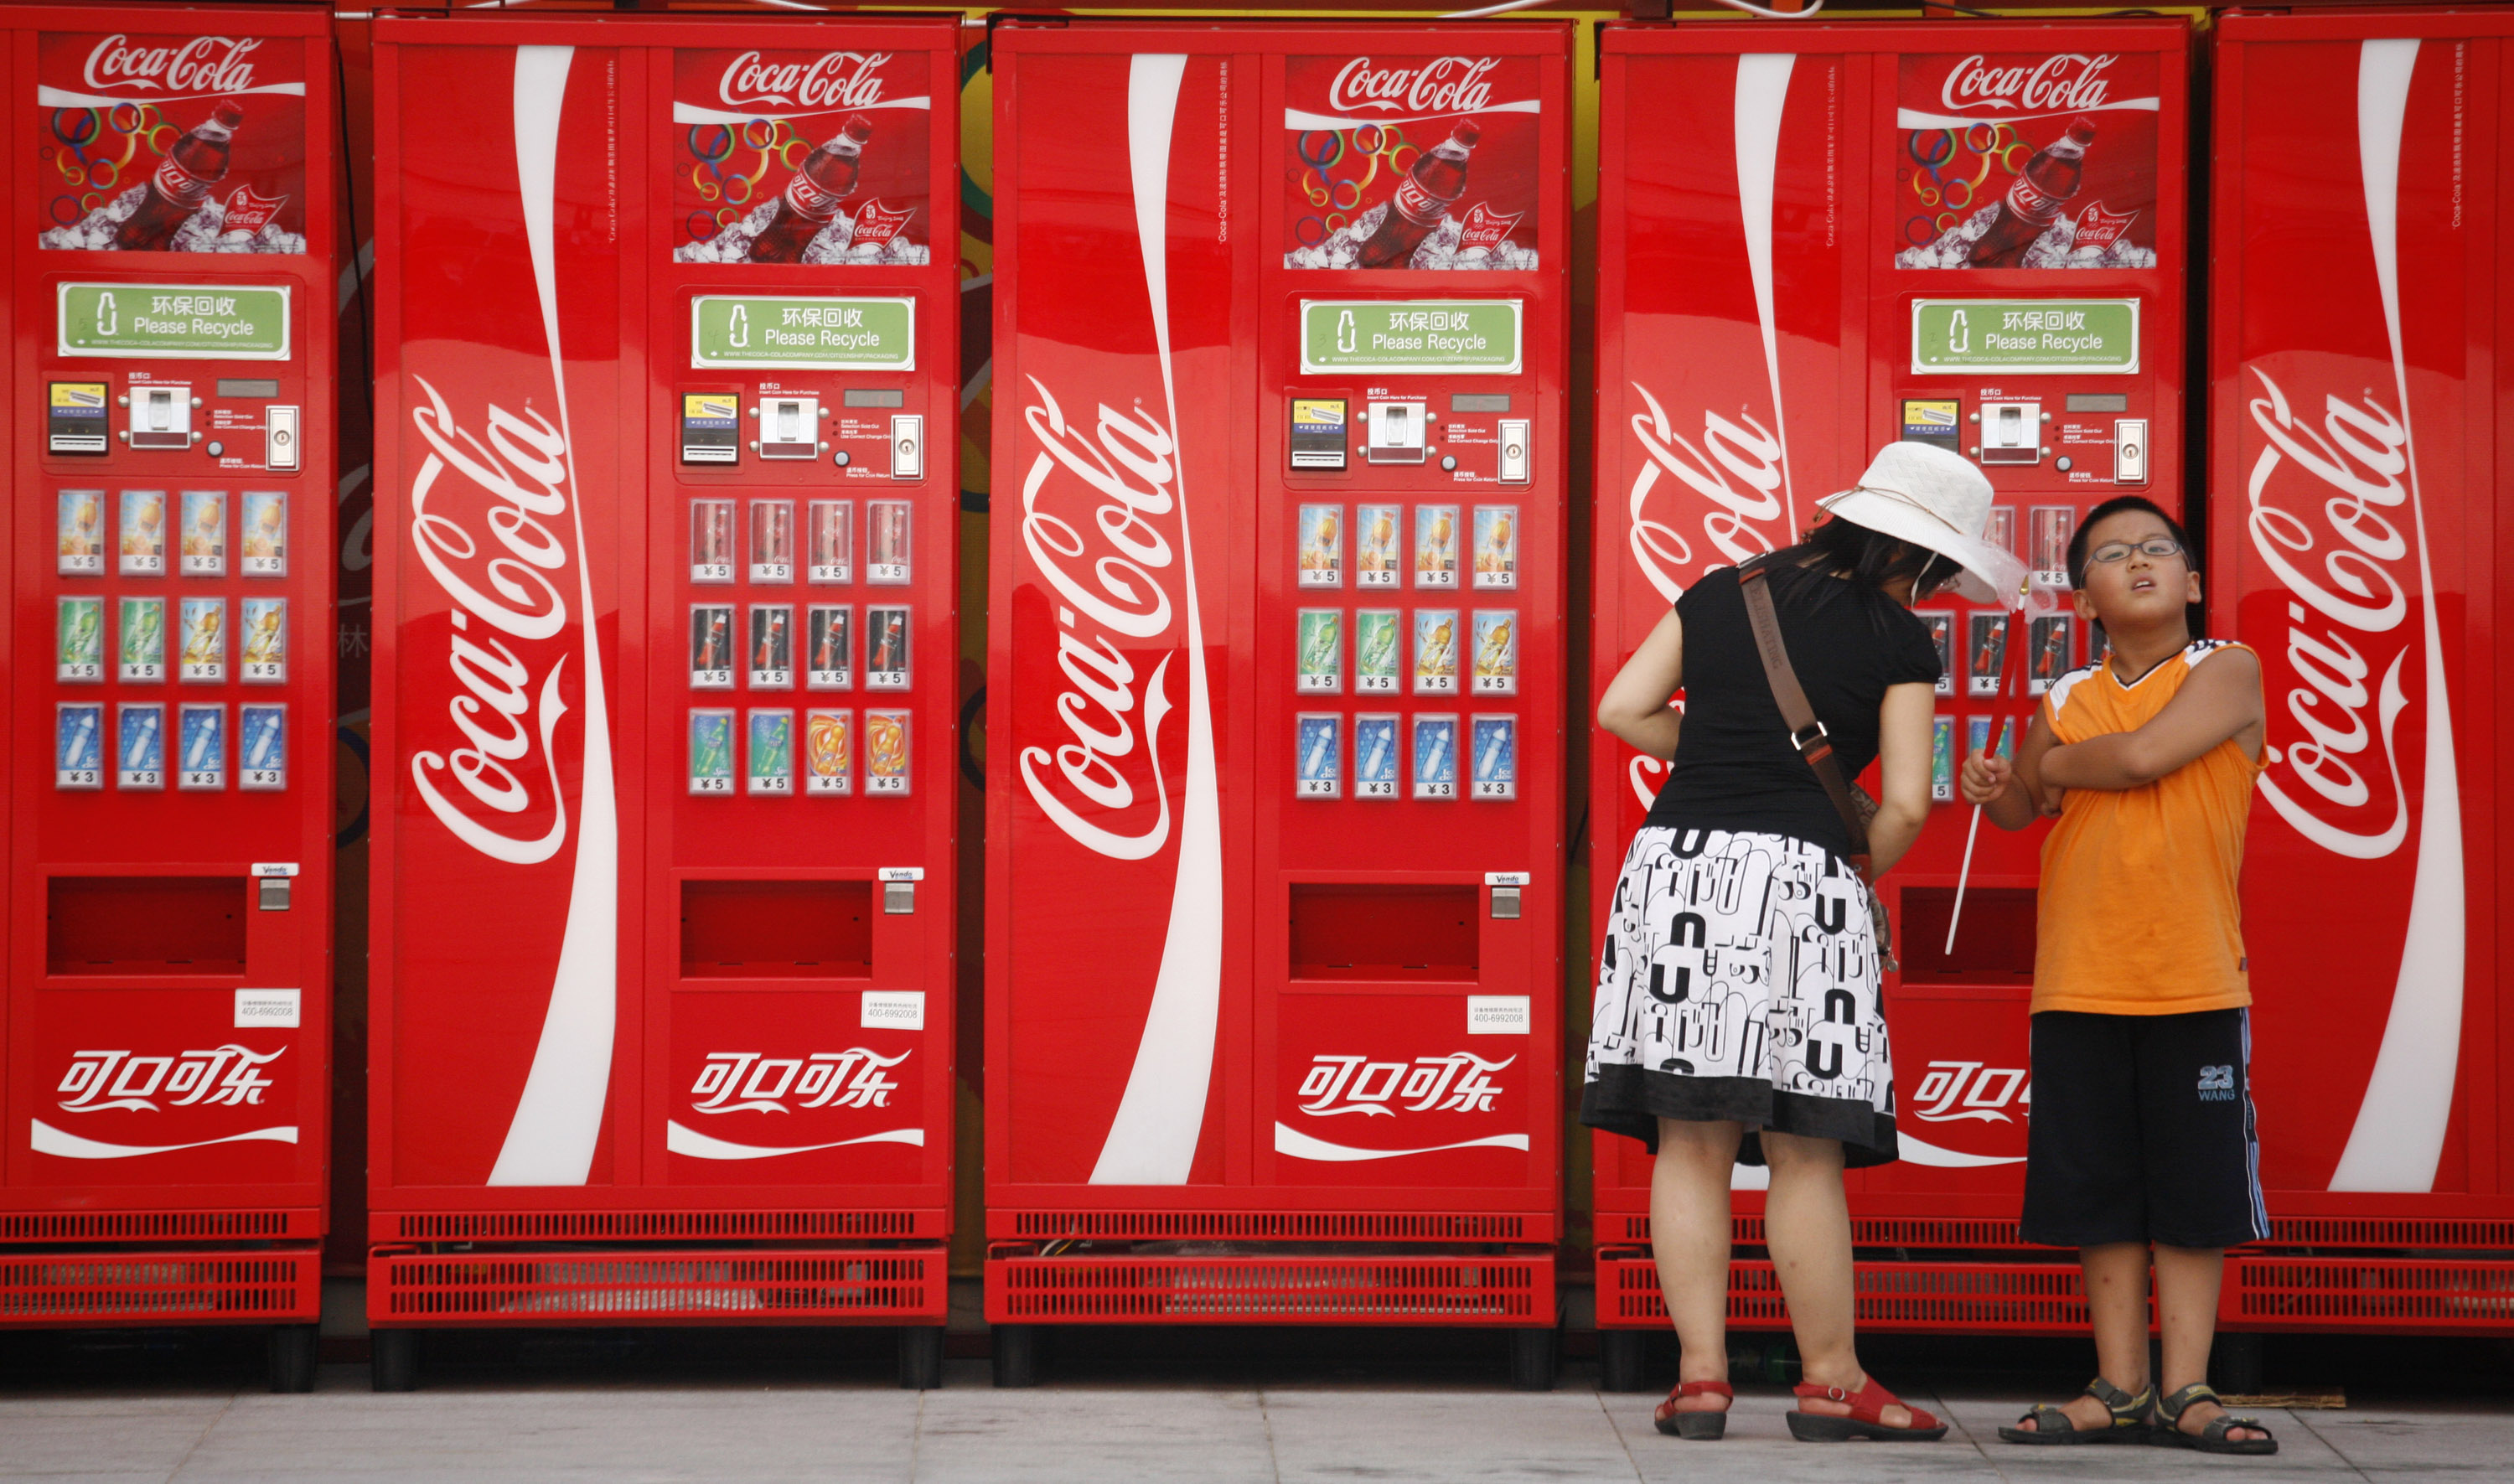 ΗΠΑ: Coca-Cola και Pepsi αλλάζουν τη συνταγή τους